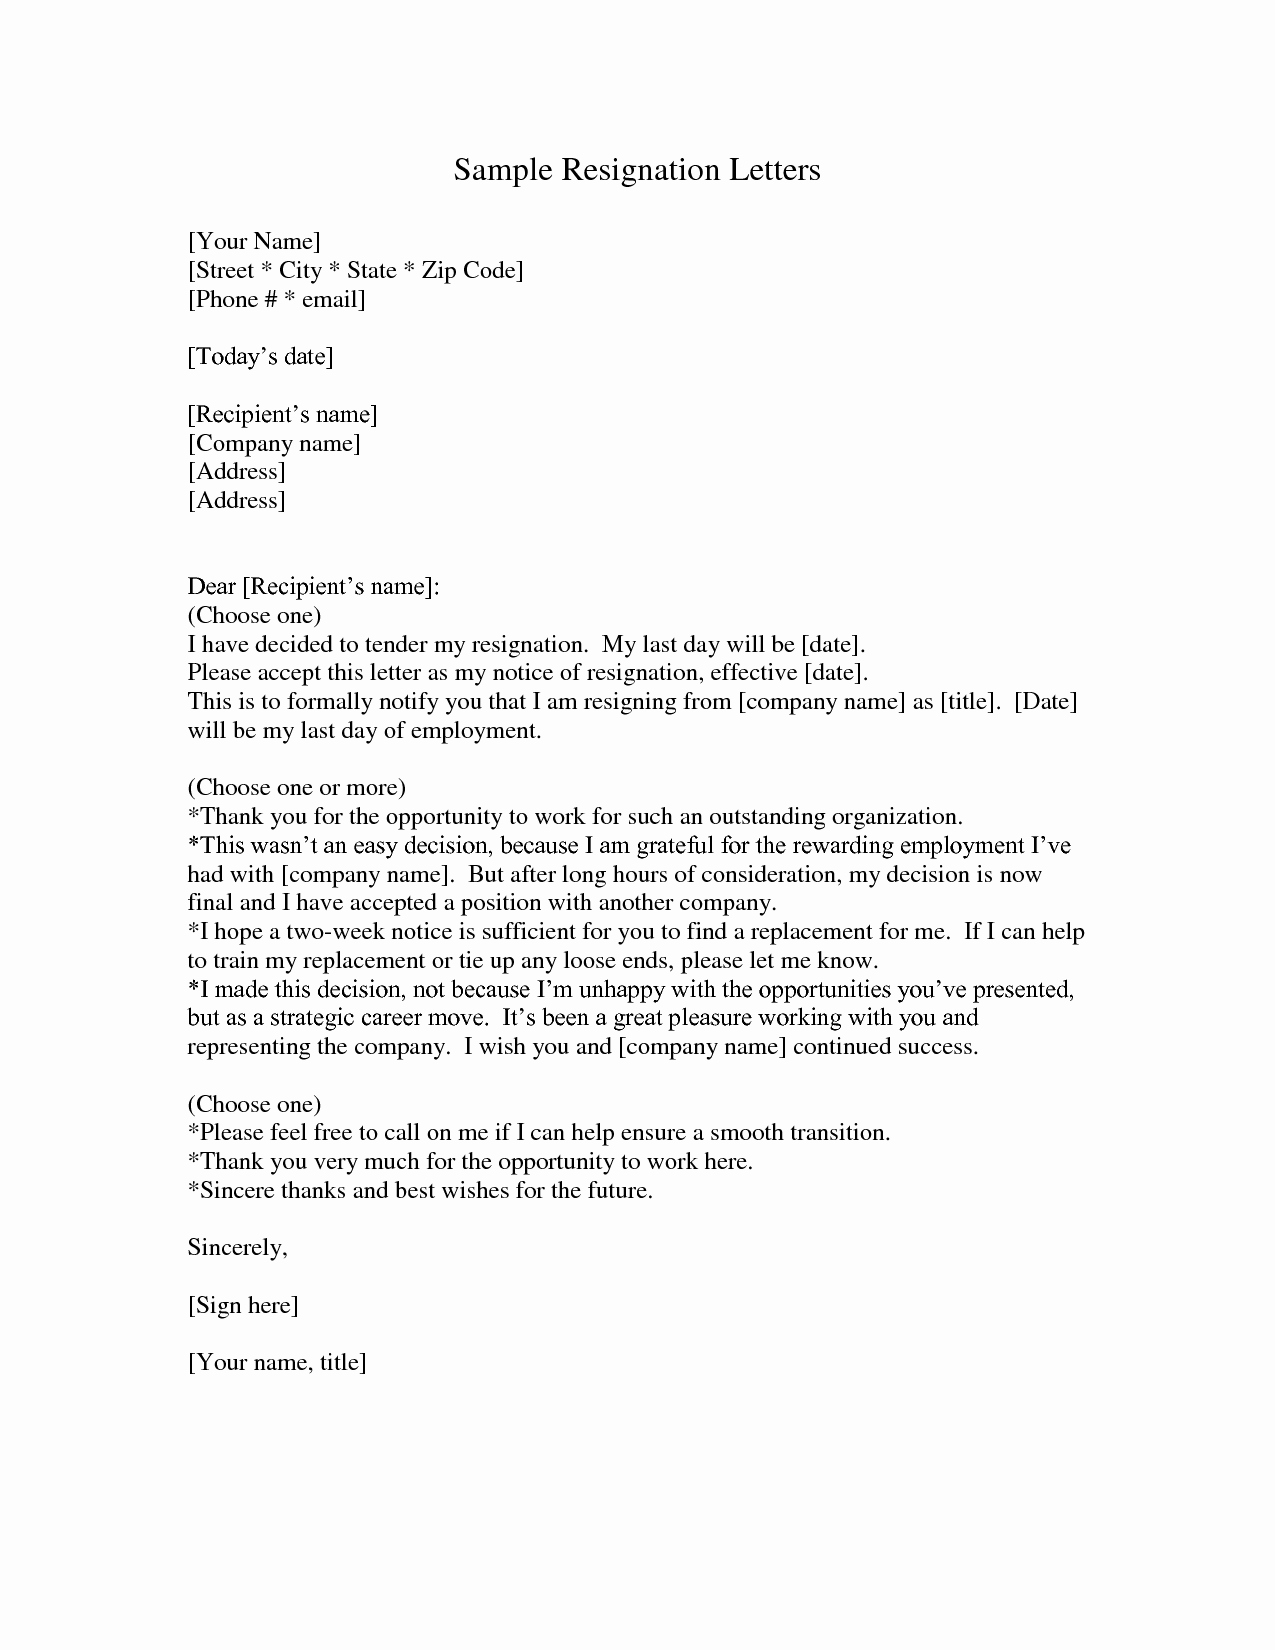 Resignation Letter Sample Free Inspirational Resignation Letter Sample Doc Resume and Letter